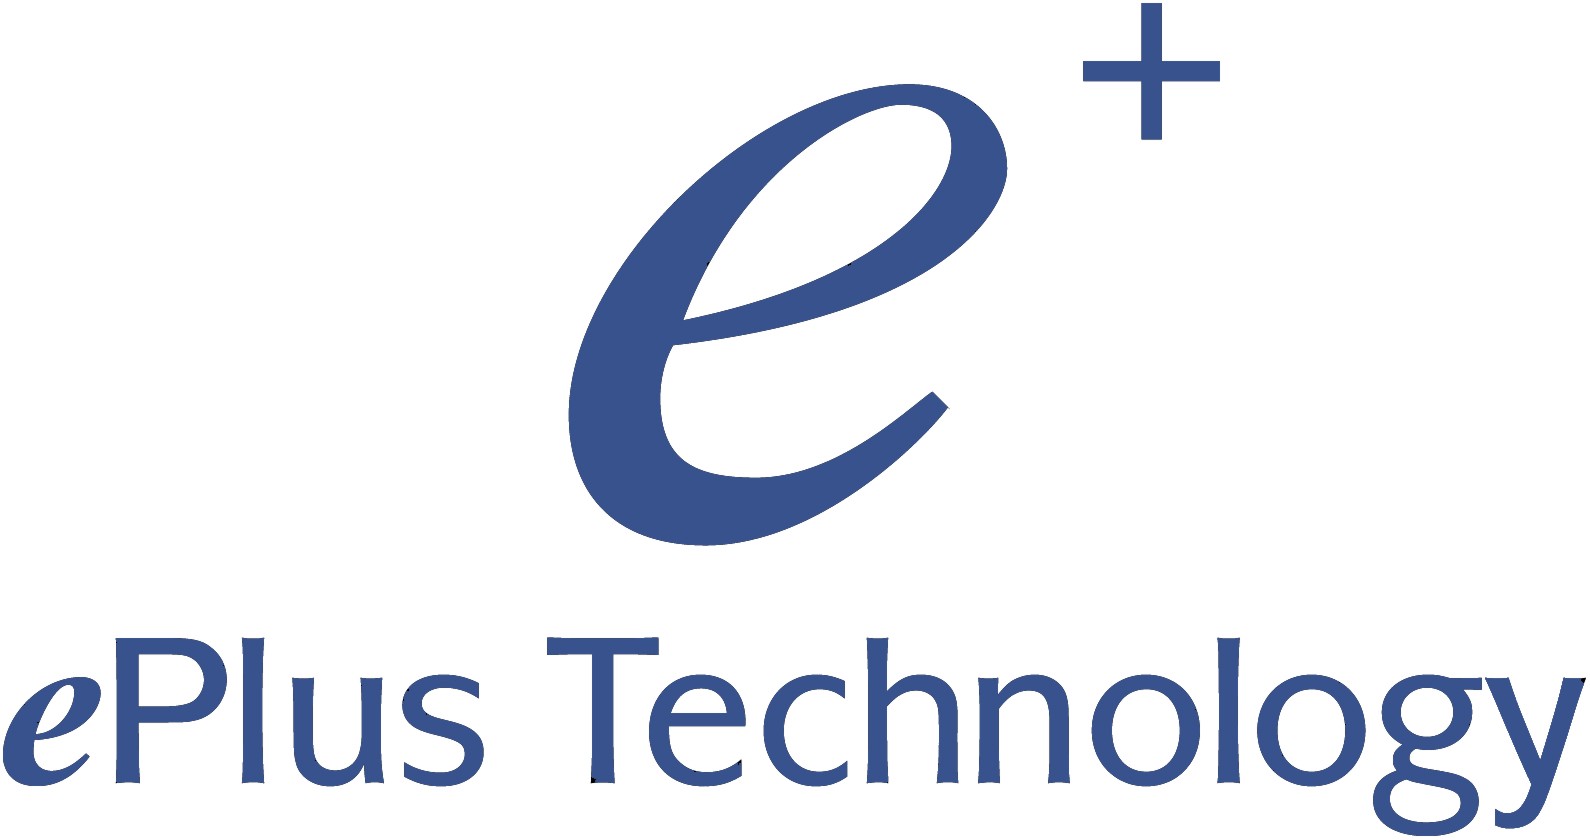 epius Logo photo - 1